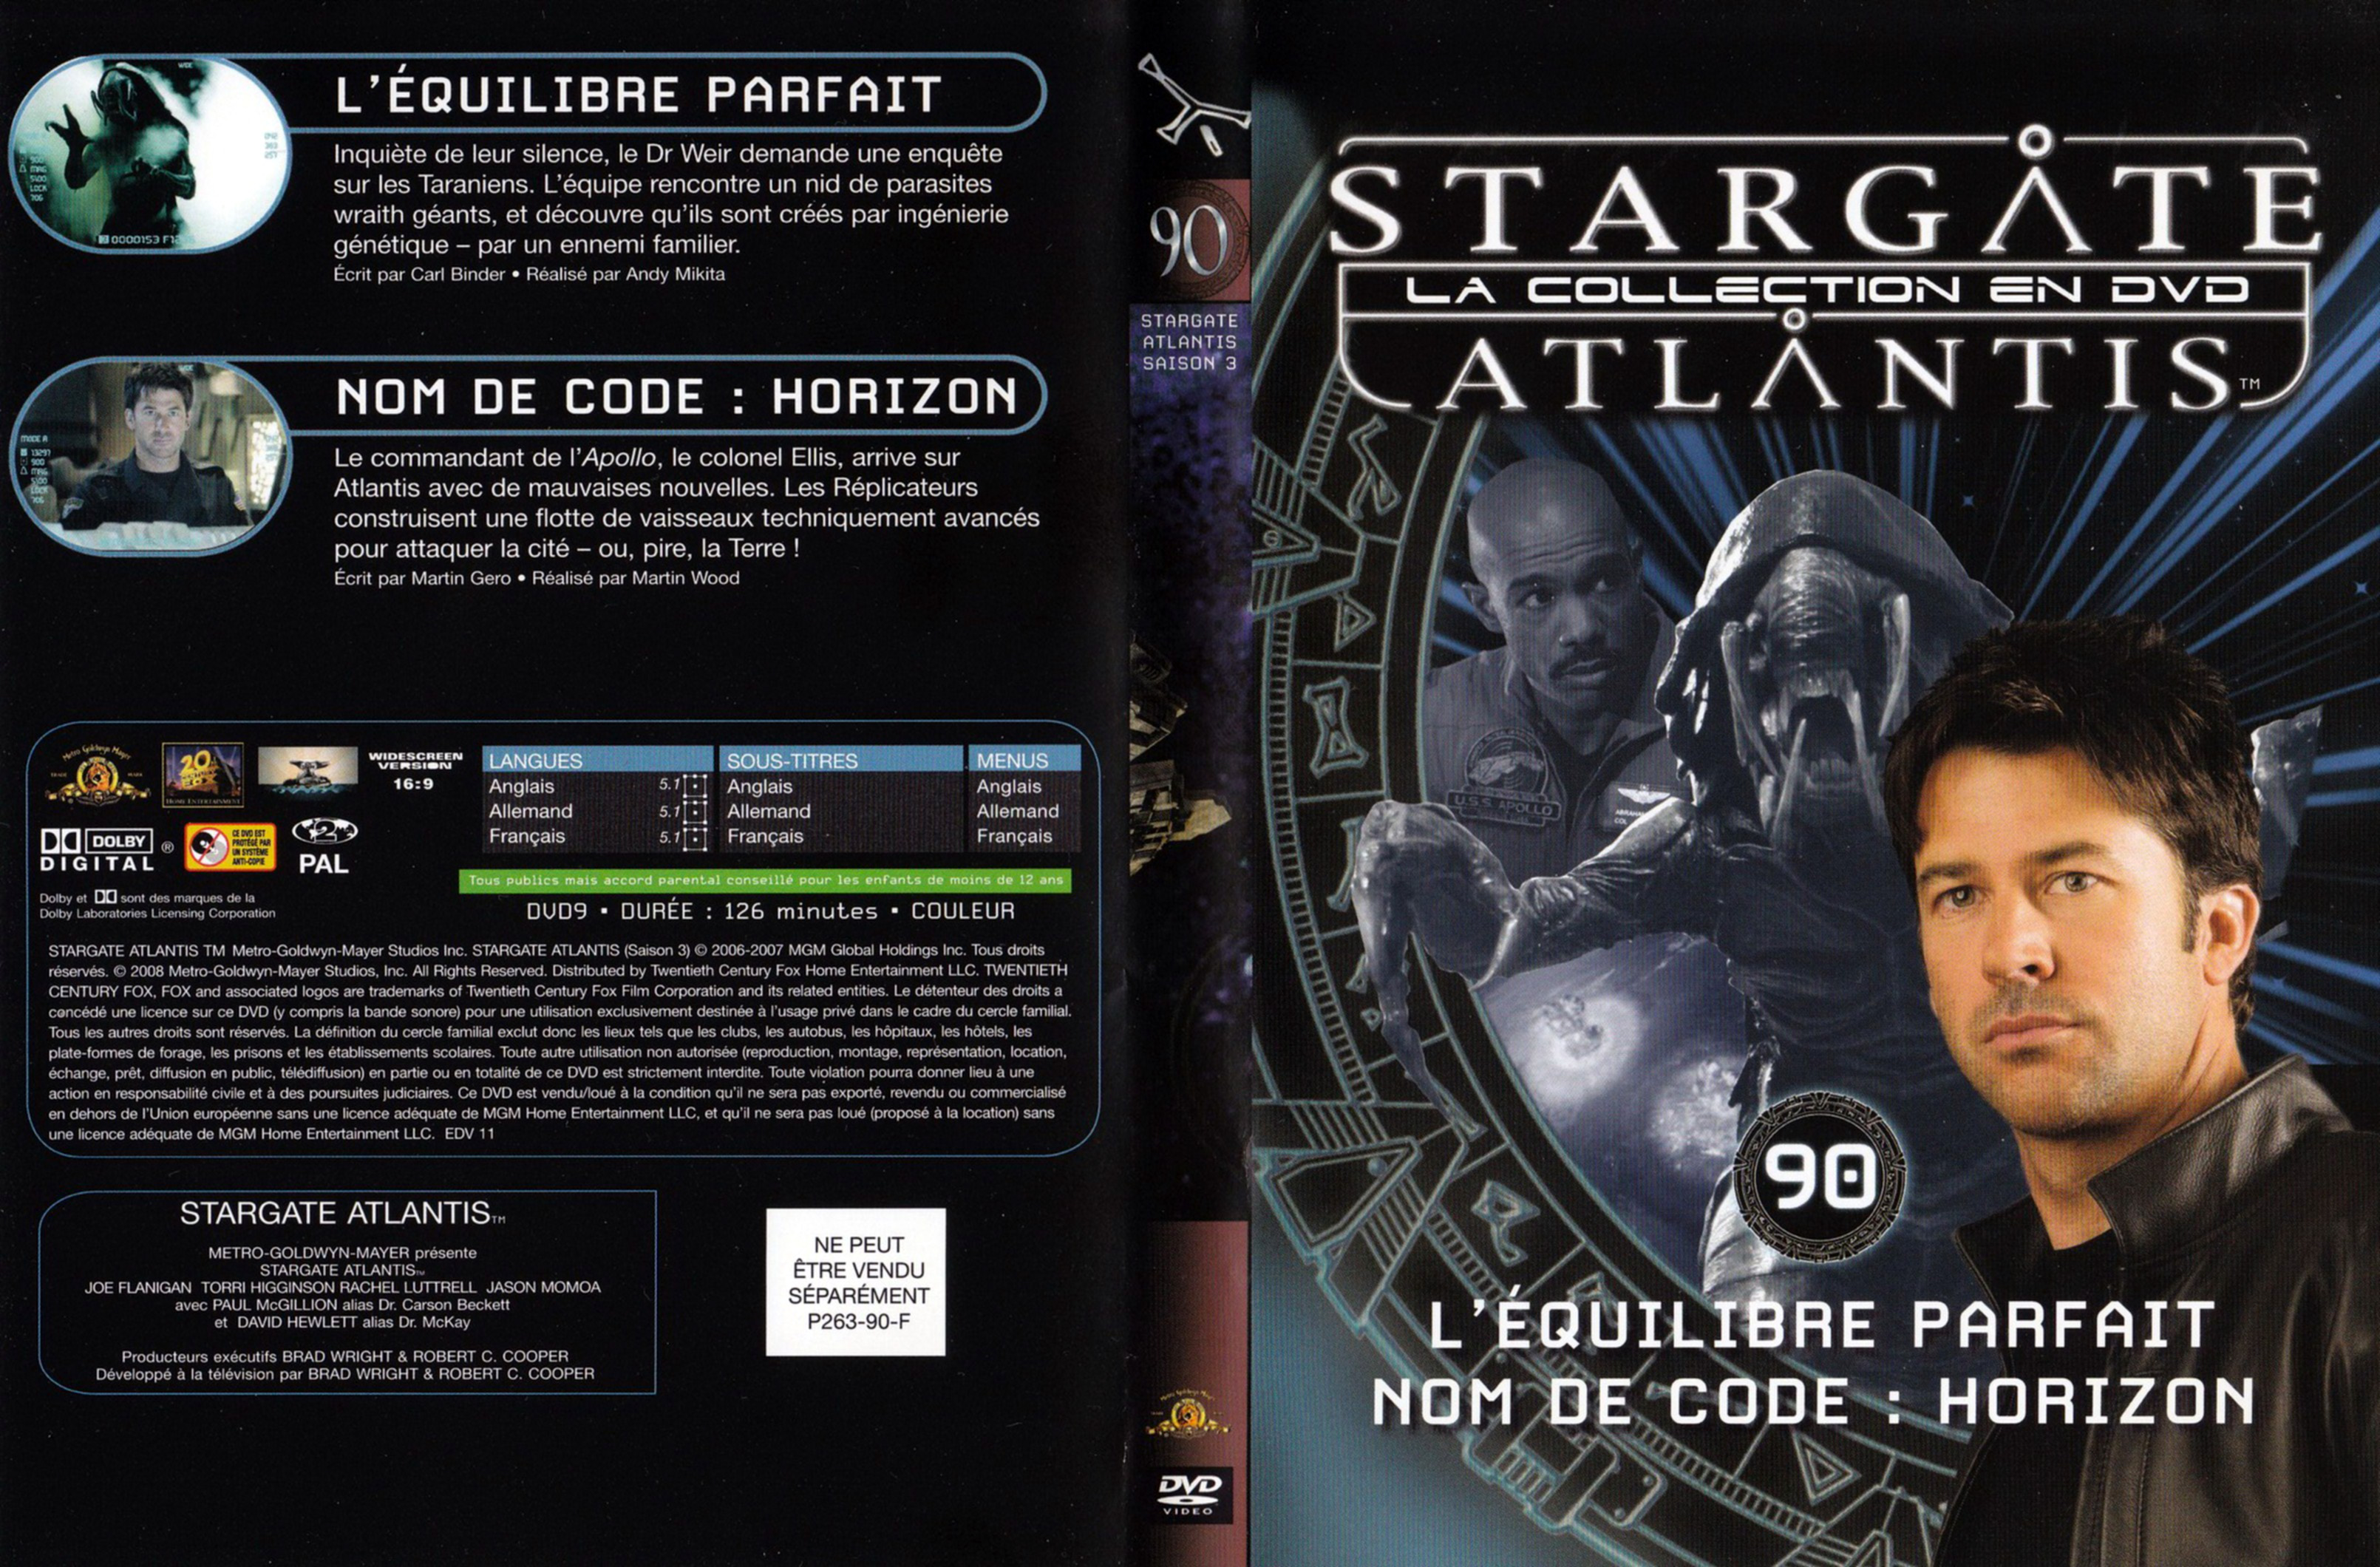 Jaquette DVD Stargate SG1 Atlantis Saison 3 vol 90